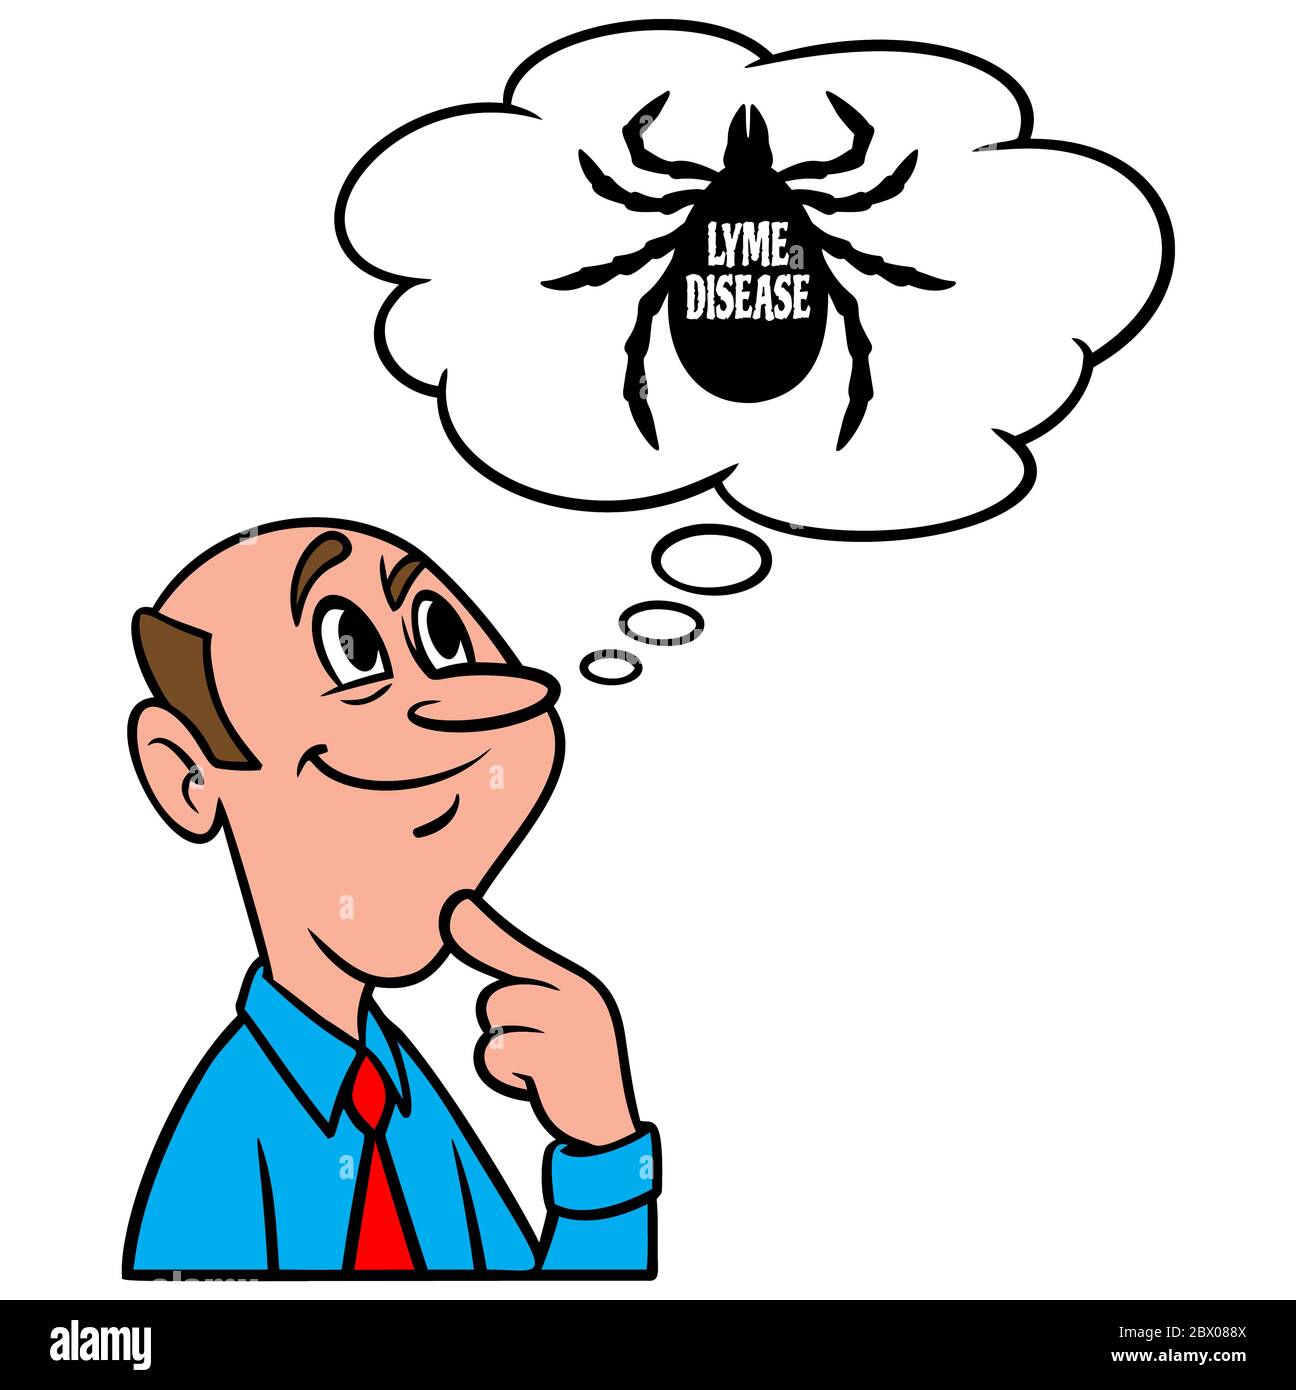 Denken über Lyme-Borreliose- eine Illustration einer Person Denken über Lyme-Borreliose. Stock Vektor